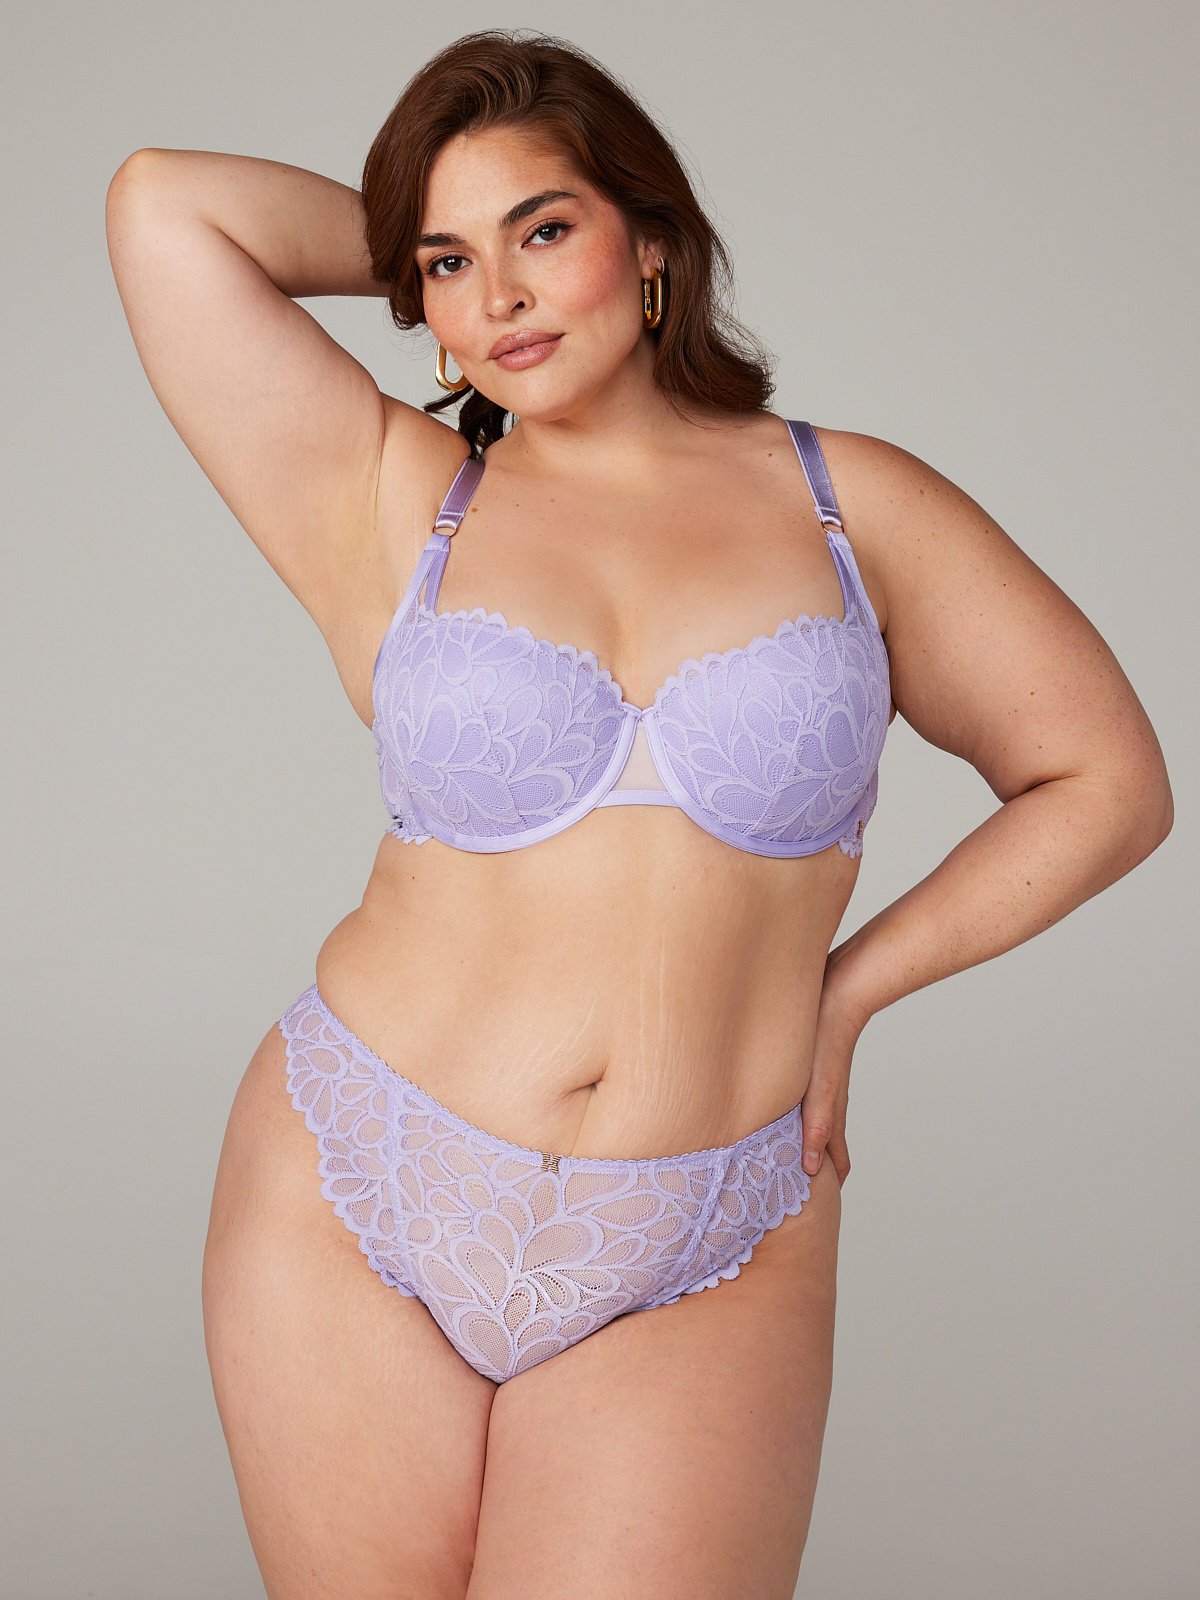 Lavender Lace Bra Size 38 E / DD - $10 - From Janessa